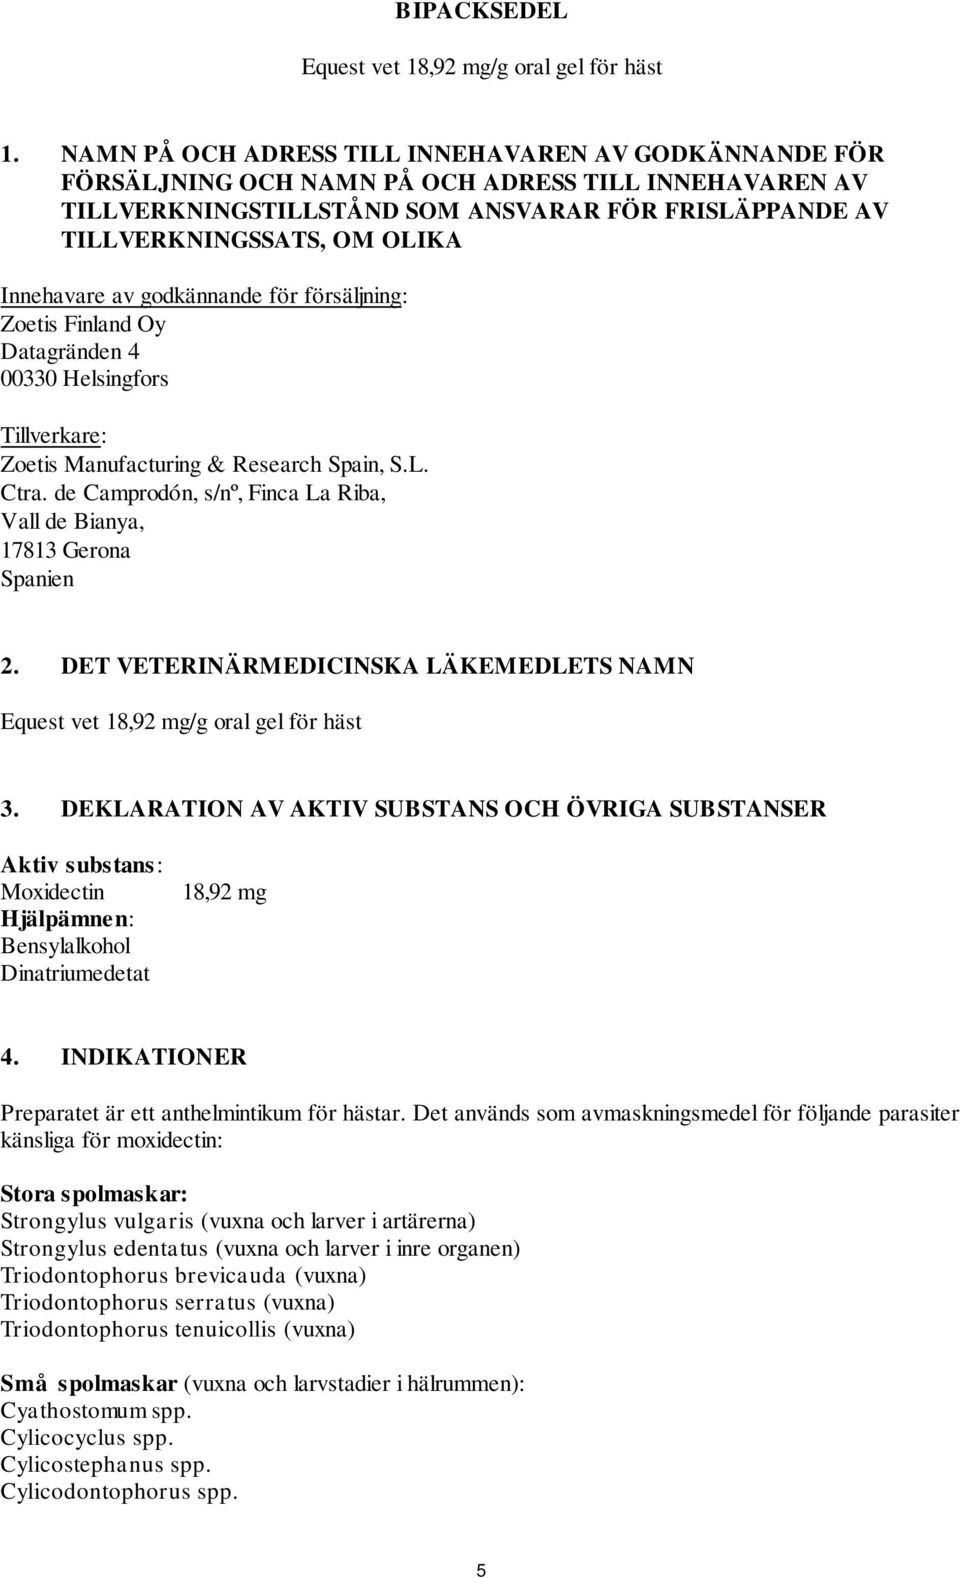 Innehavare av godkännande för försäljning: Zoetis Finland Oy Datagränden 4 00330 Helsingfors Tillverkare: Zoetis Manufacturing & Research Spain, S.L. Ctra.